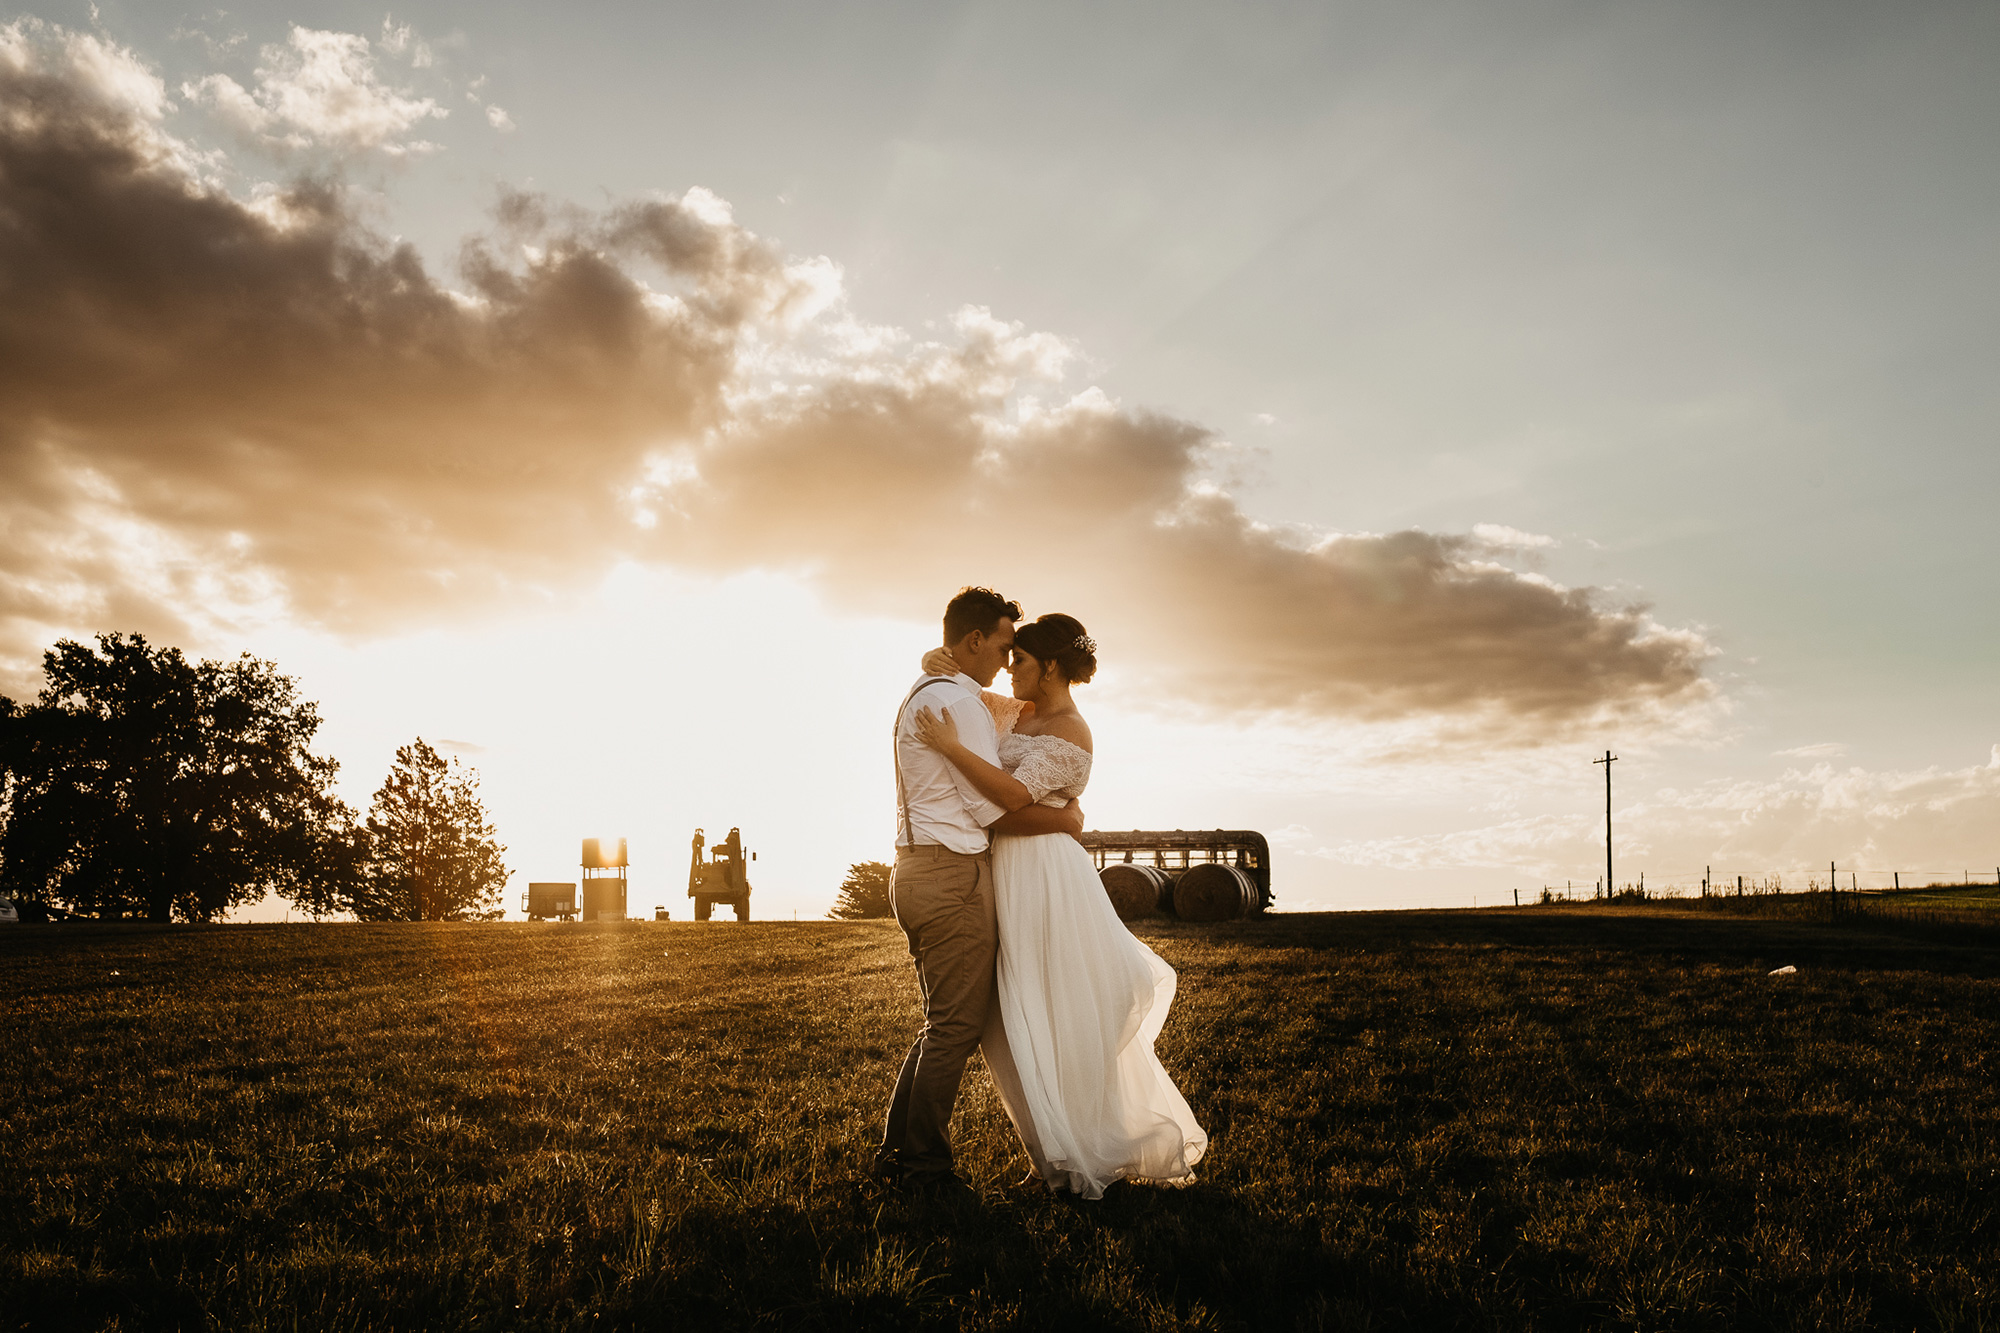 Kelly Alex Rustic Farm Wedding Daniel Milligan Photography 041